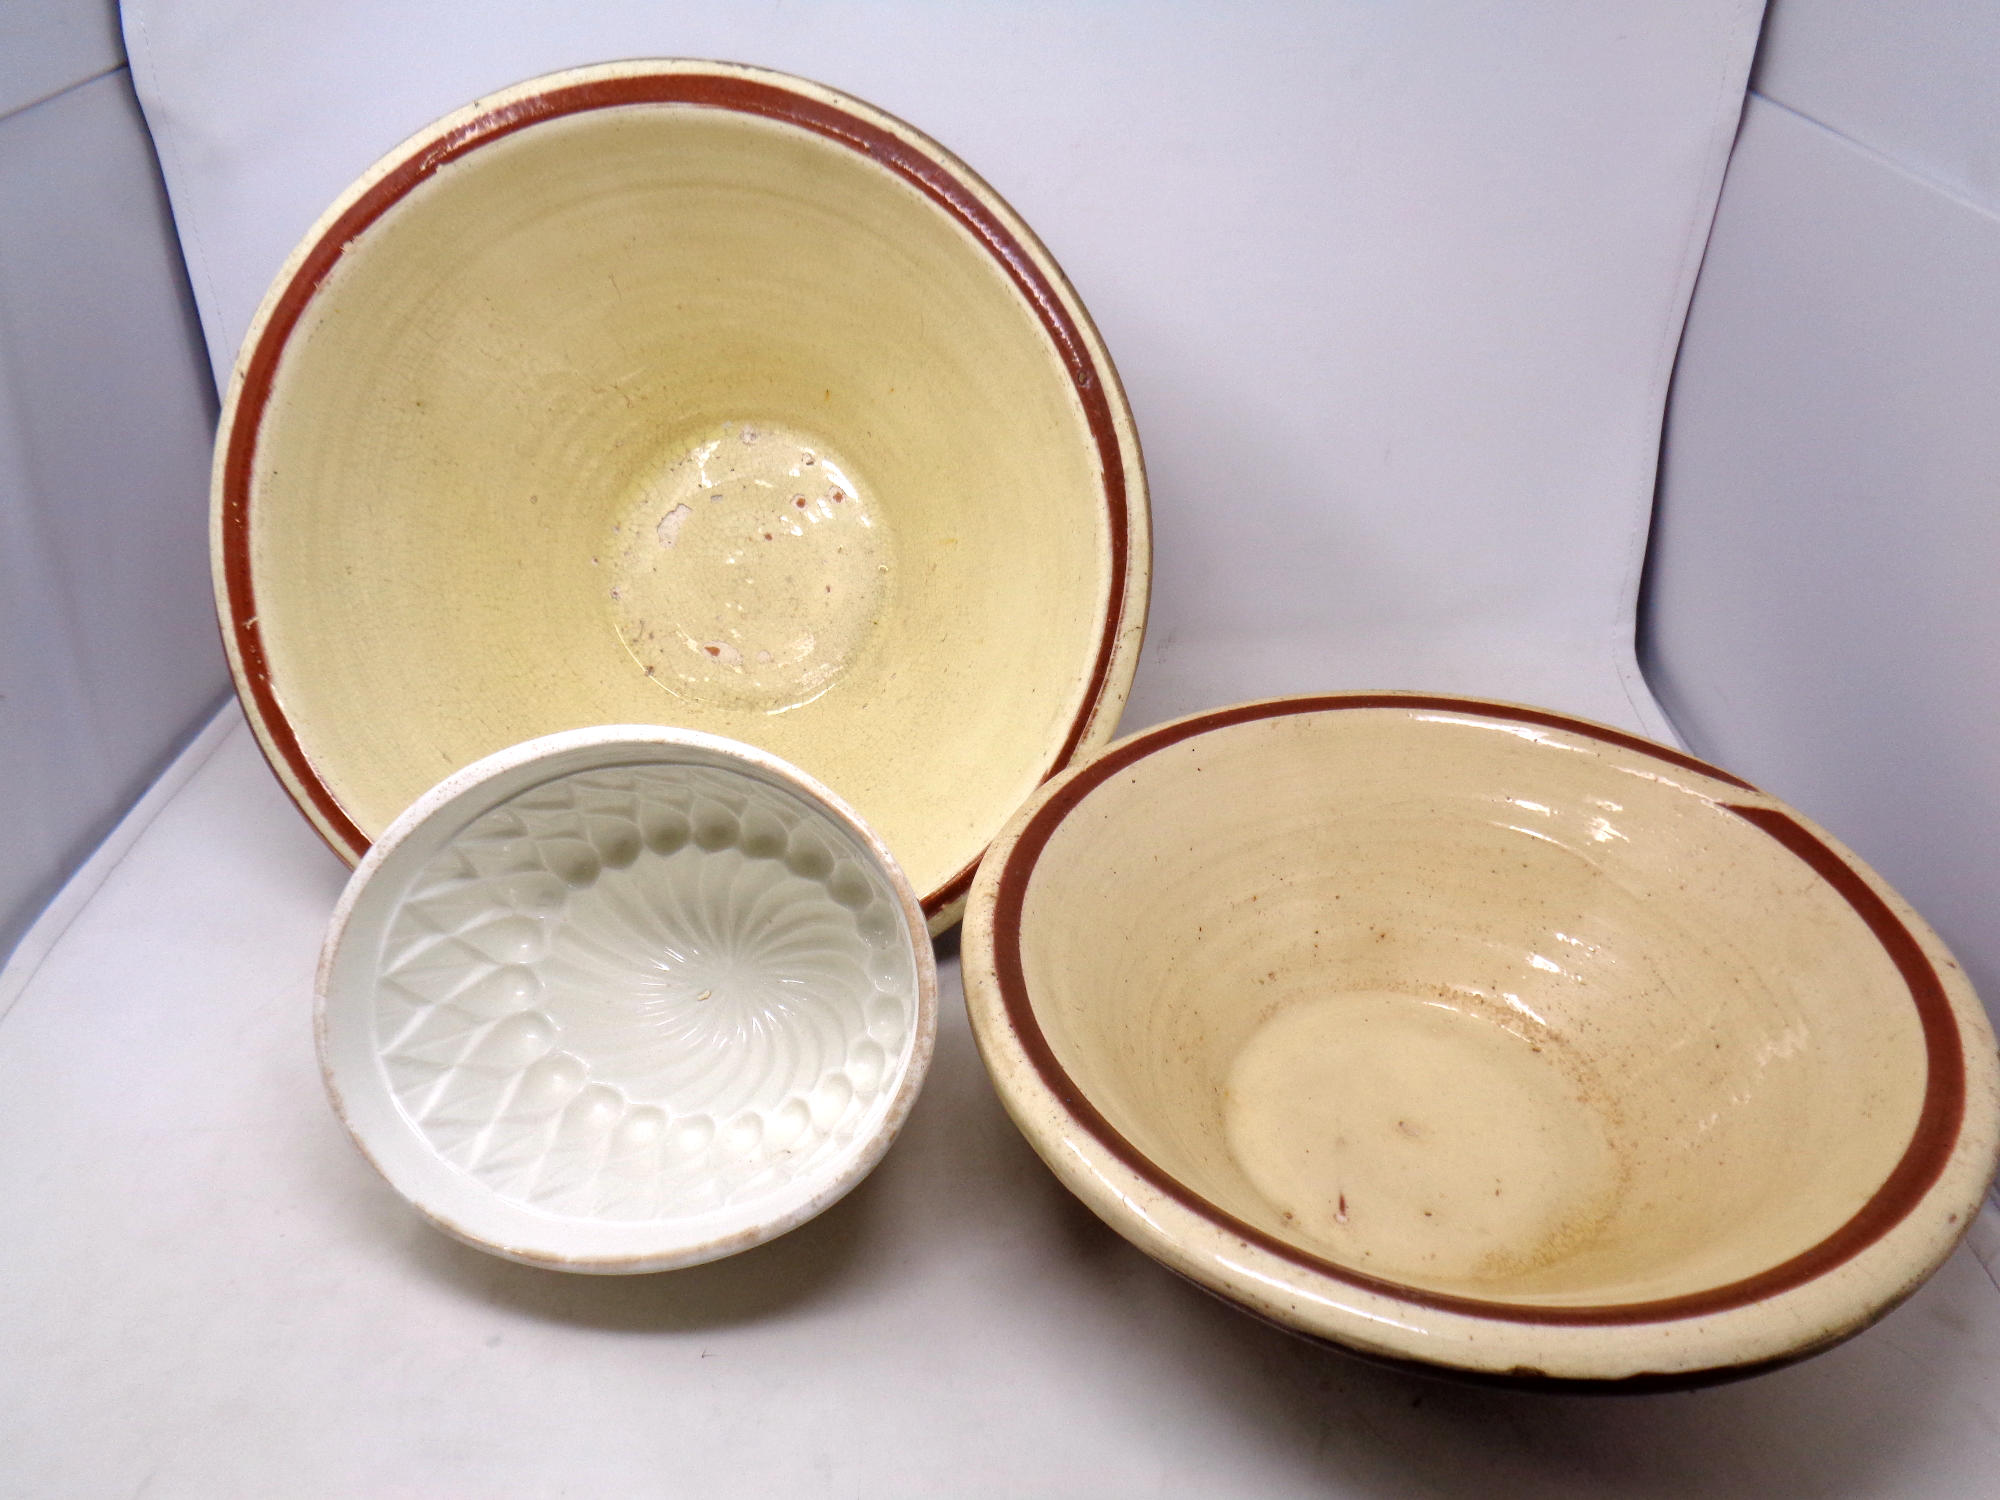 Two glazed crock pots together with a glazed pie dish